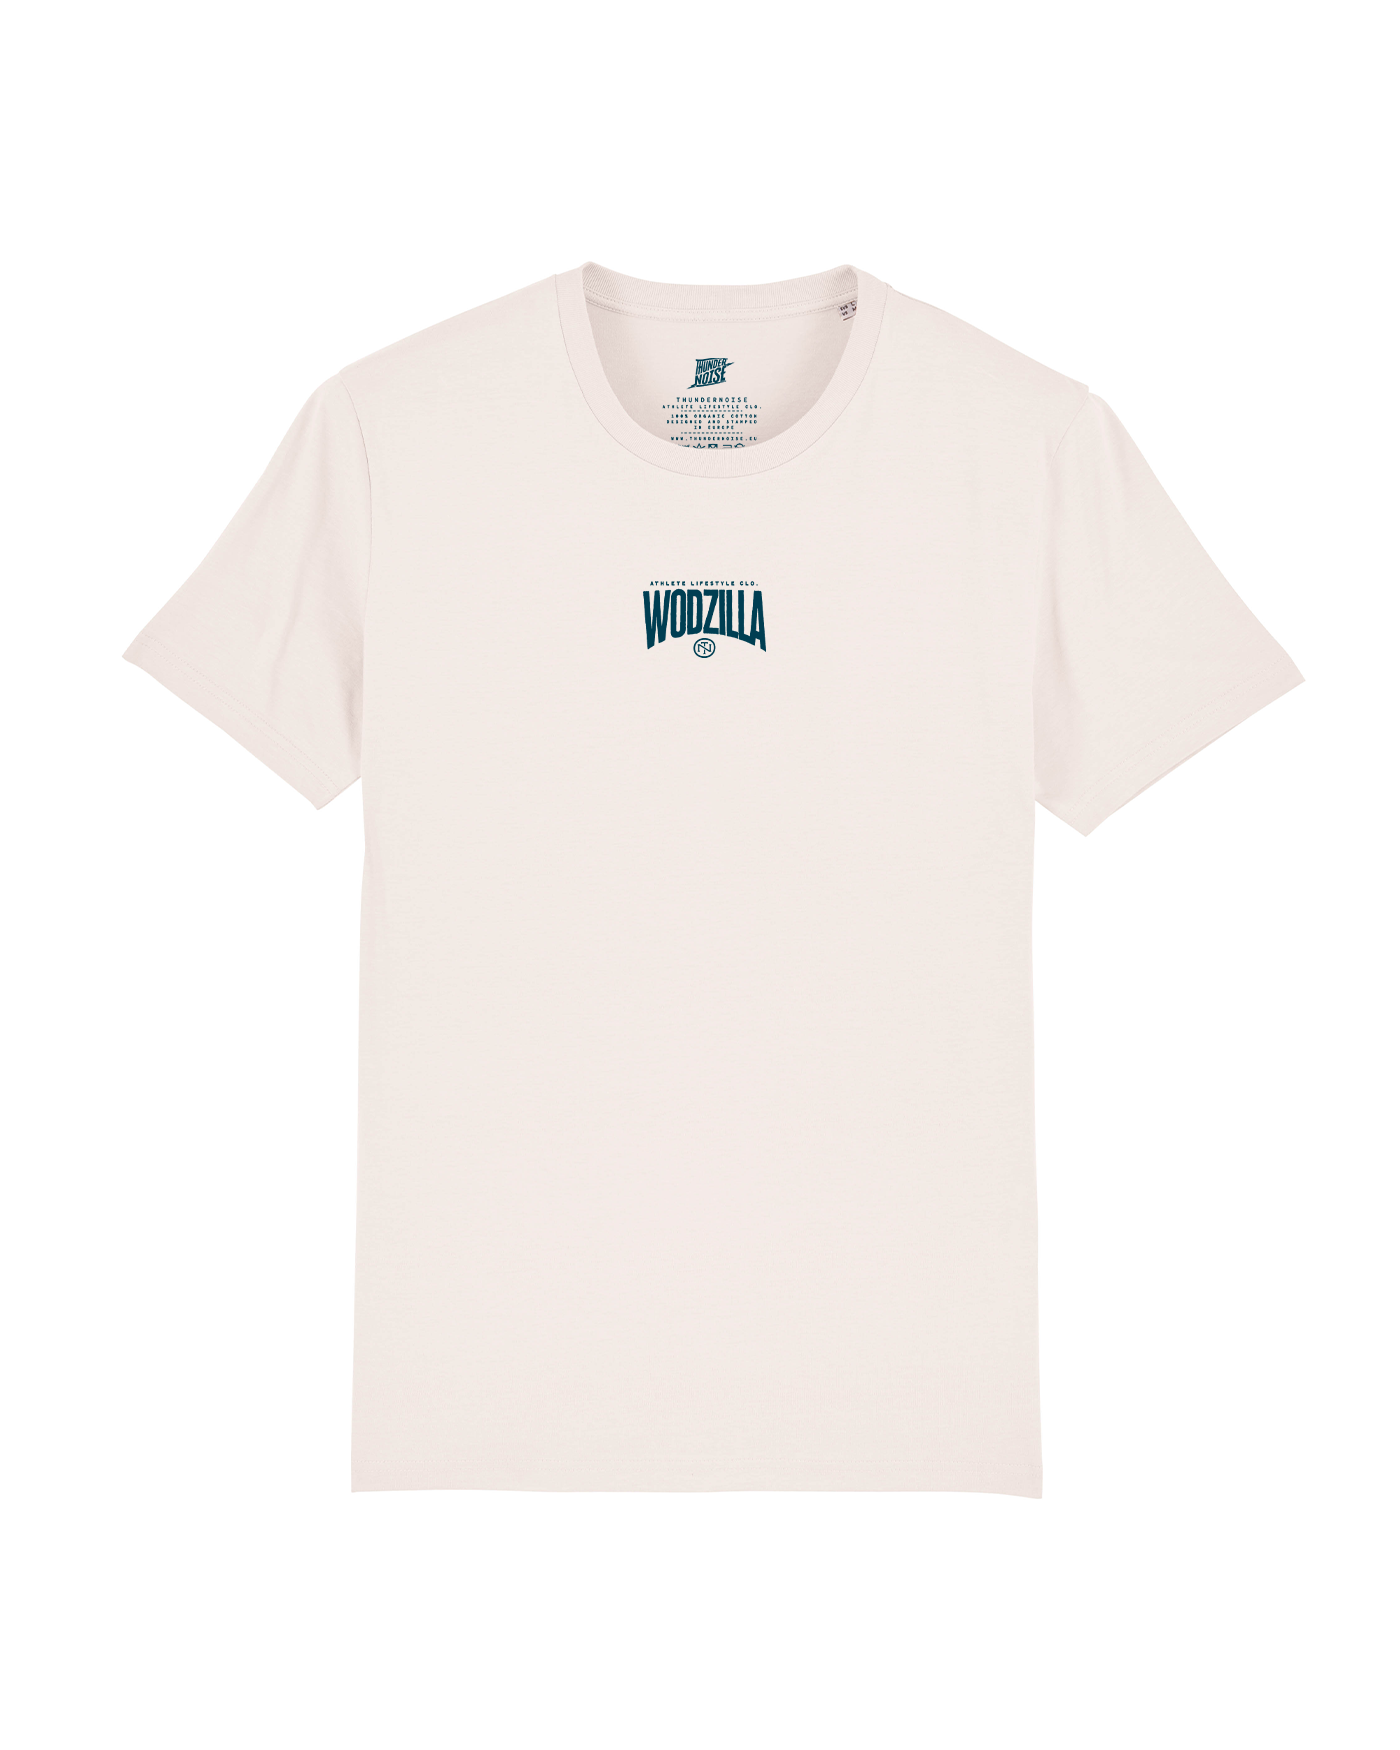 Wodzilla T-Shirt - Vintage White